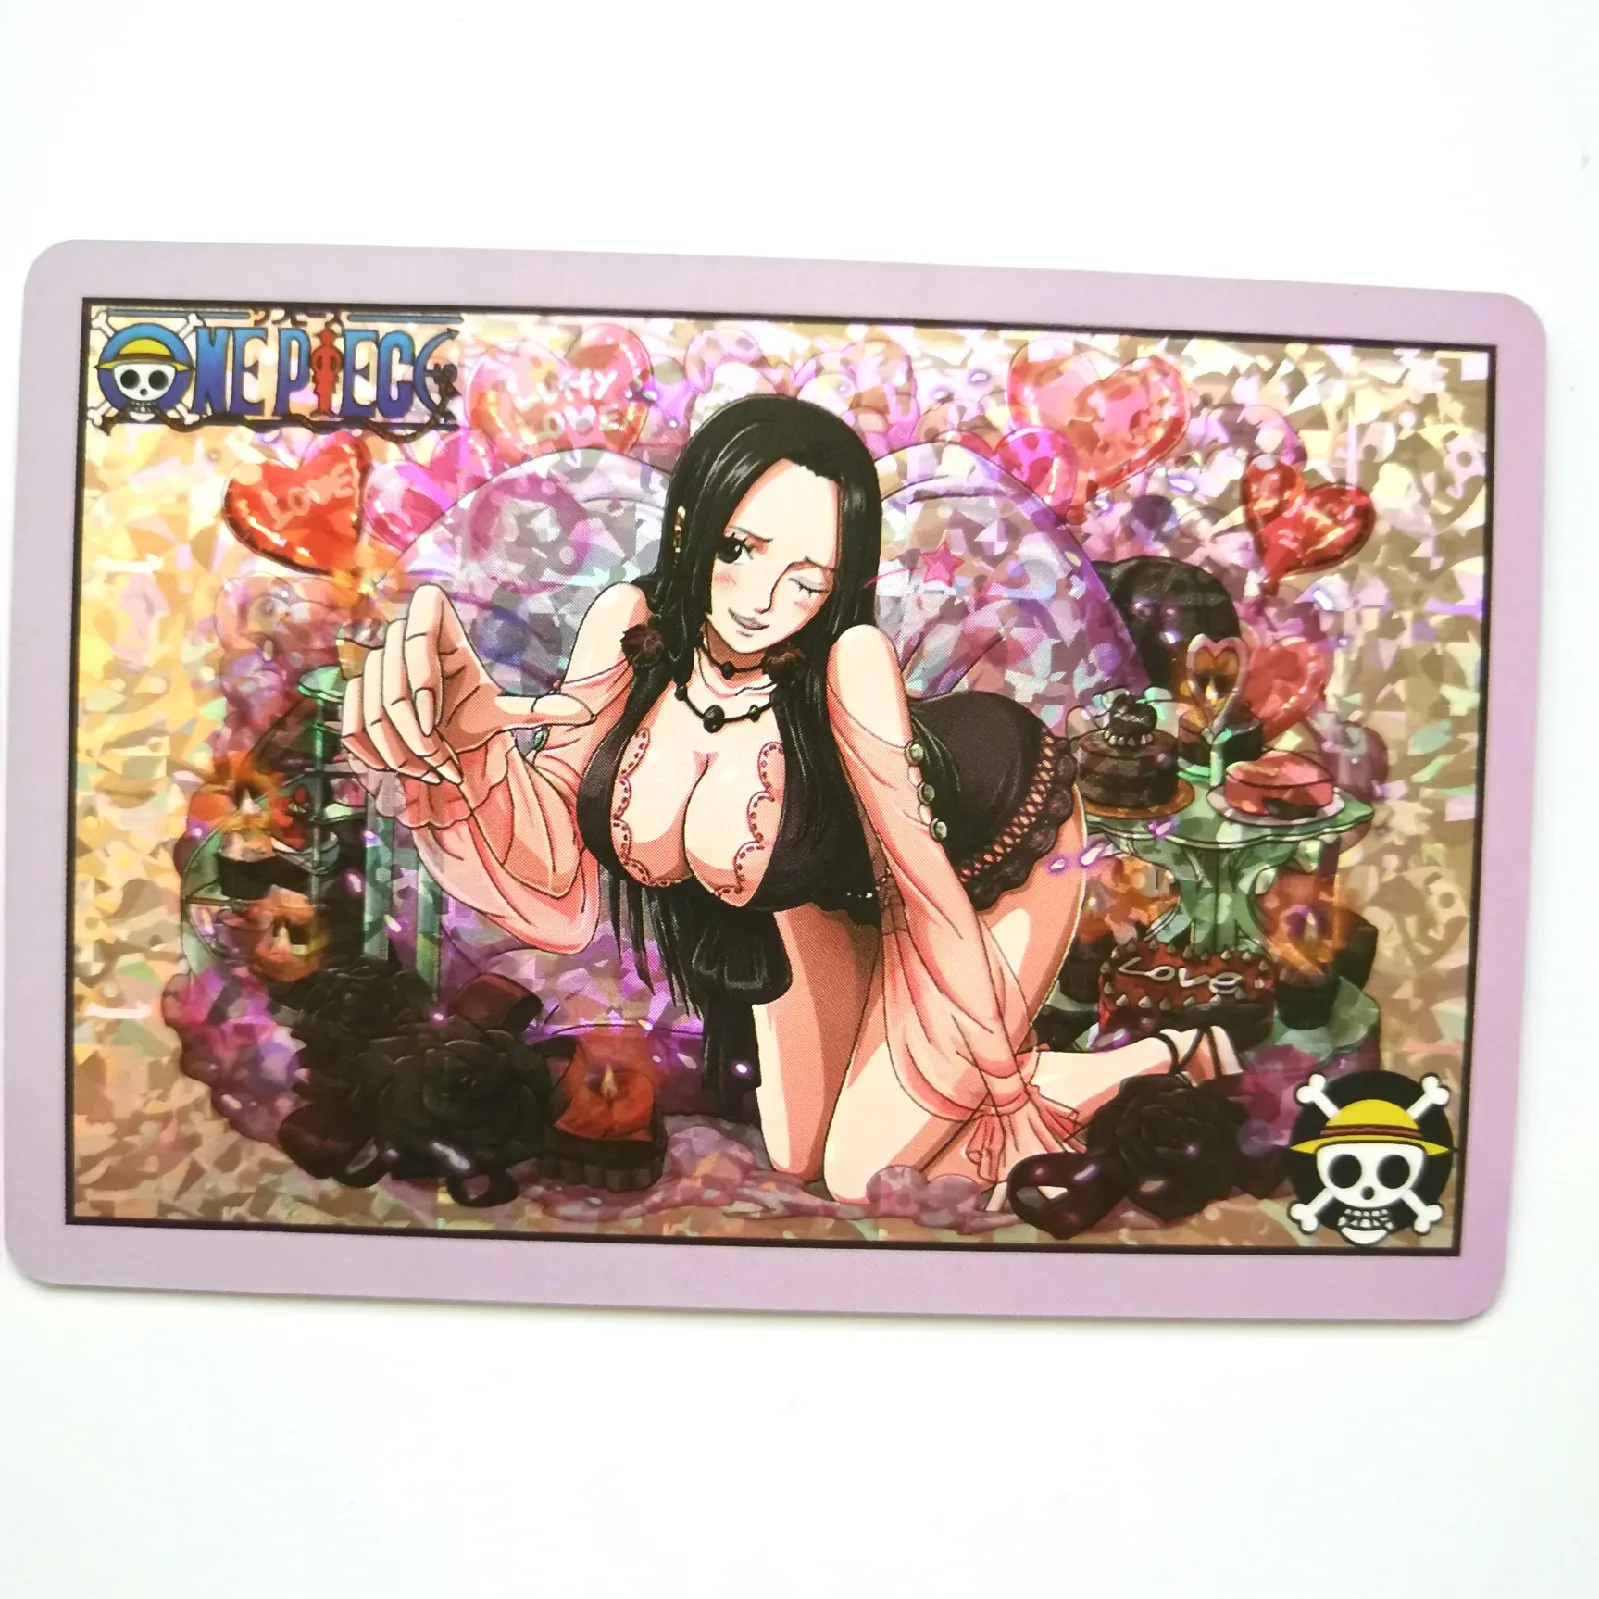 7 шт./компл. цельный сексуальный и изображением героев манги нами Нико игрушки Робин хобби Коллекционные вещи игра Коллекция аниме-открытки